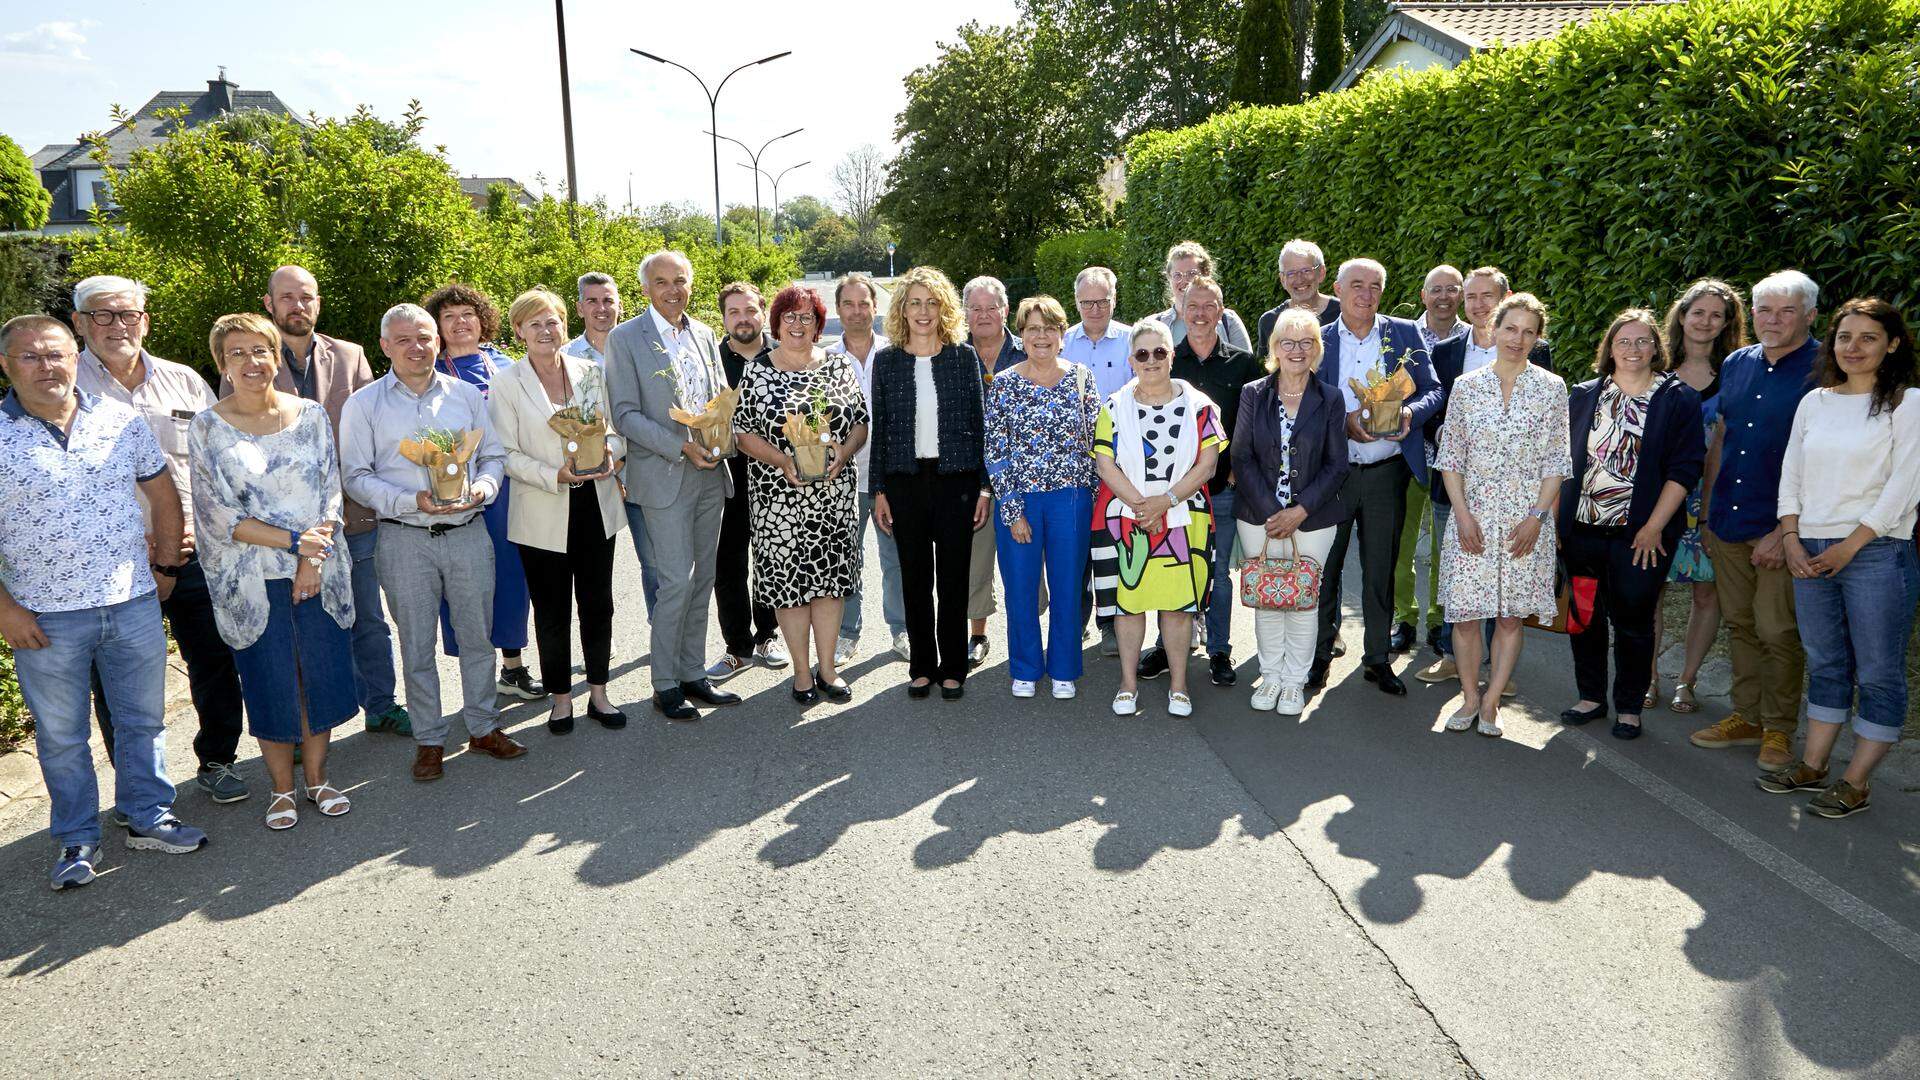 (au milieu) Joëlle Welfring, ministre de l'Environnement, du Climat et du Développement durable, entouré par les représentants des communes lauréates (Sanem, Strassen, Mondorf-les-Bains, Ettelbruck, Dudelange)